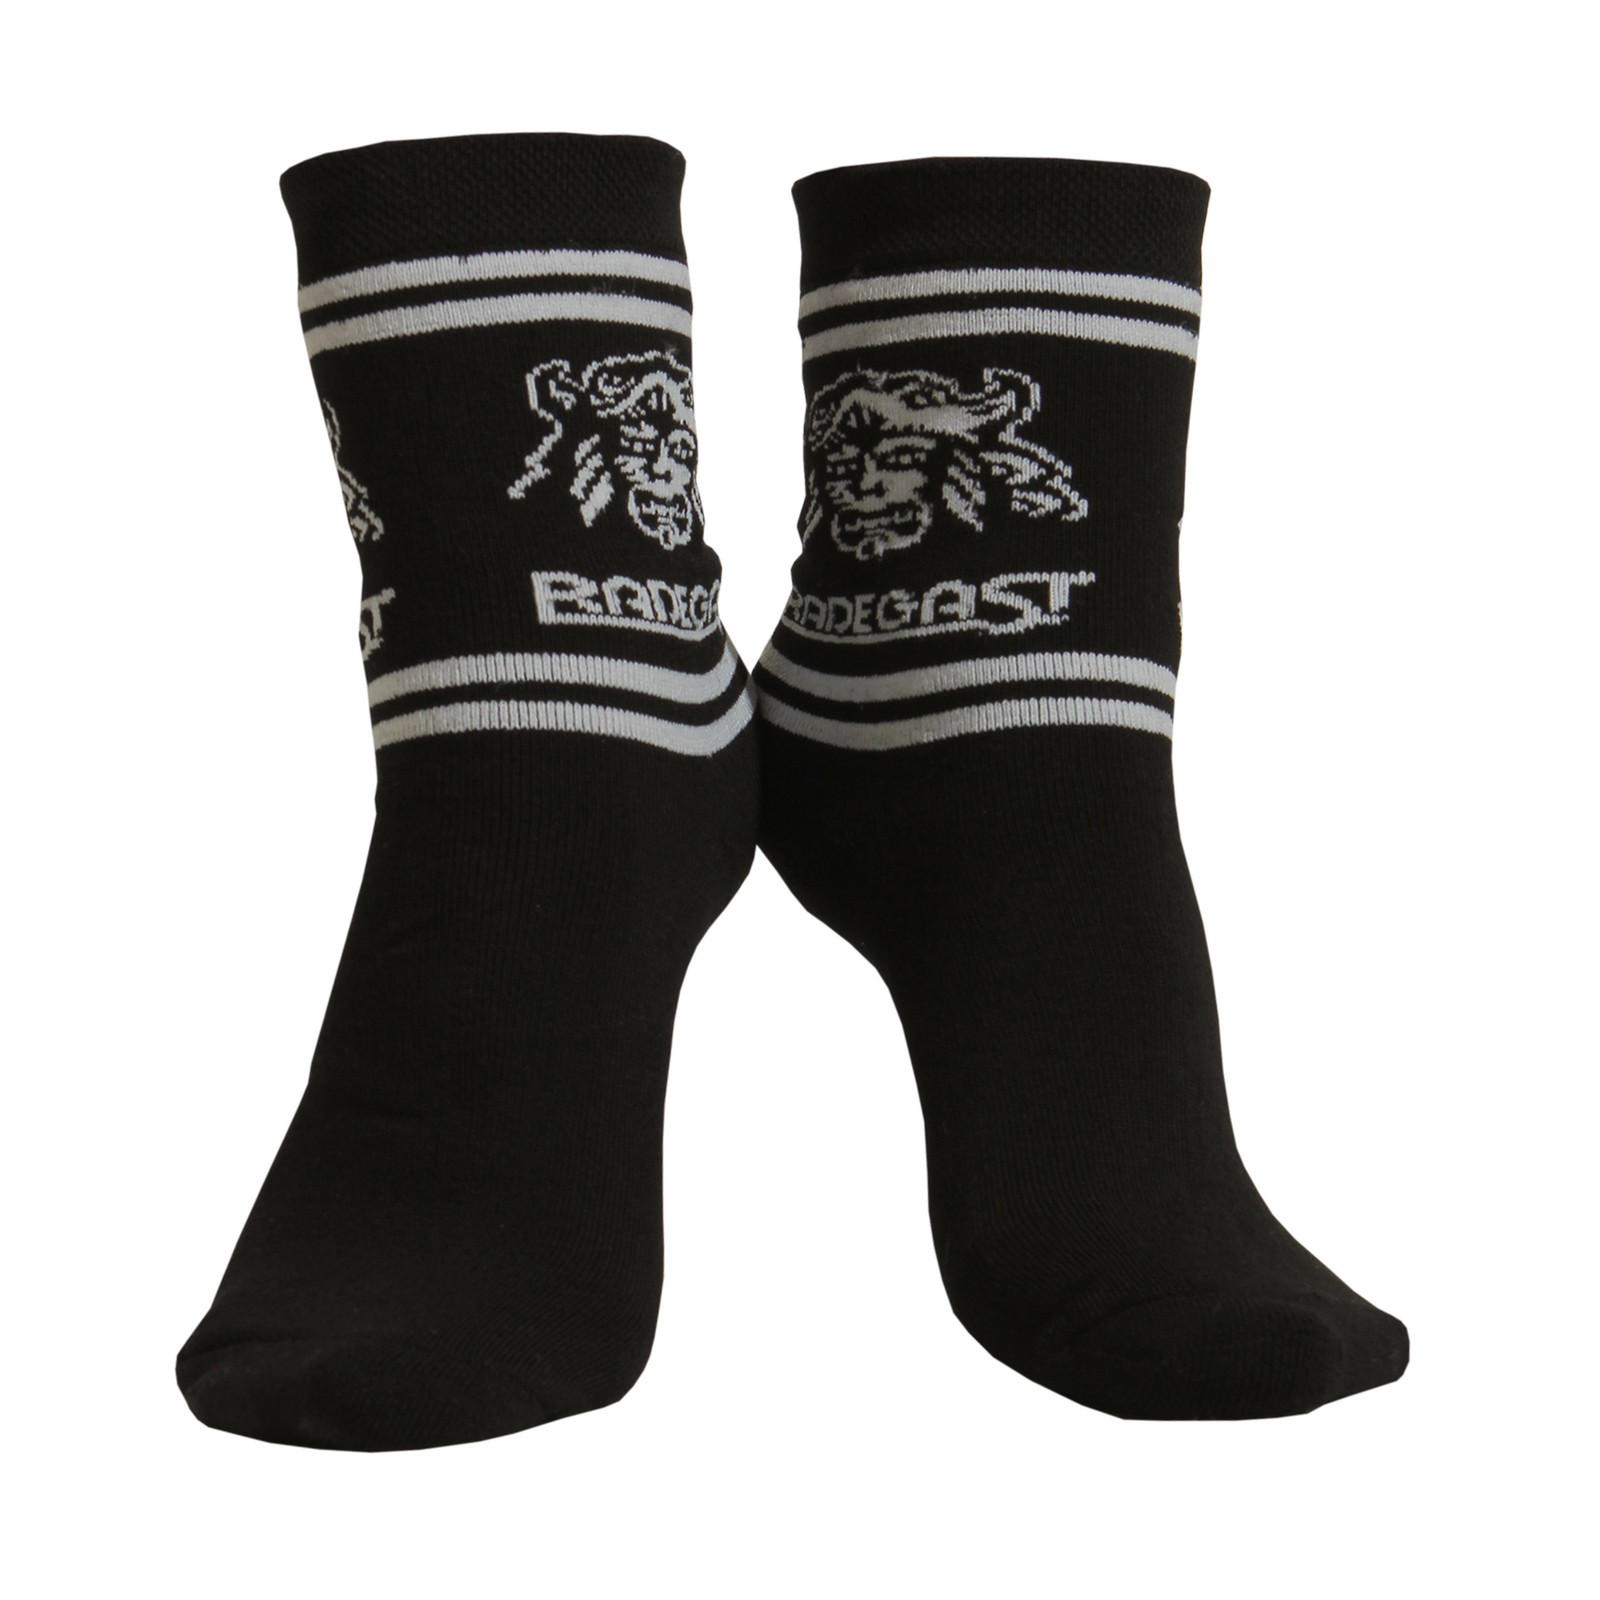 Termo ponožky Radegast černé